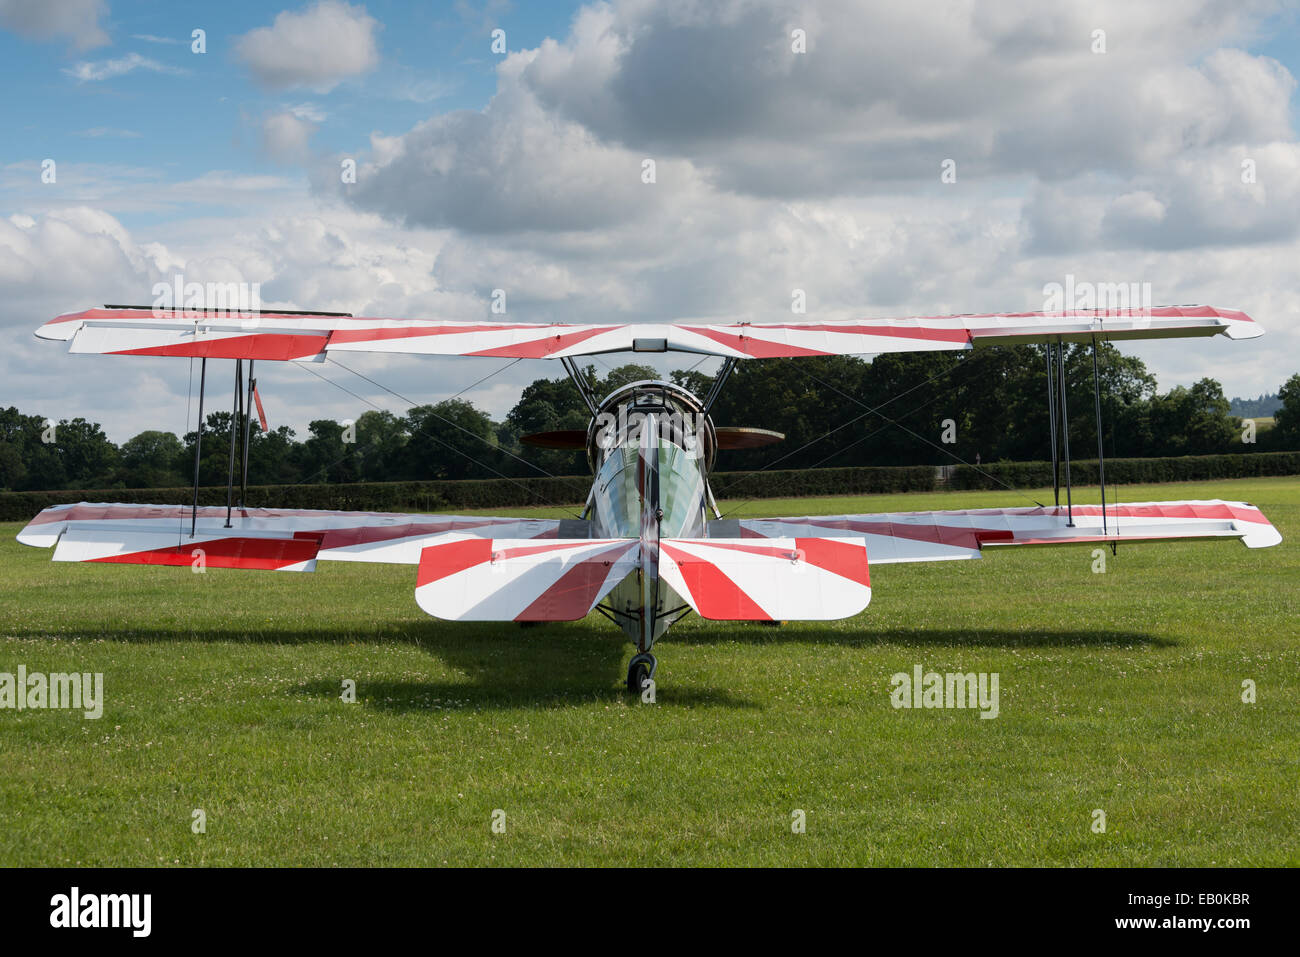 Biggleswade, UK - 29 juin 2014 : un millésime Avro Tutor bi plan sur l'affichage à la Shuttleworth Collection air show. Banque D'Images